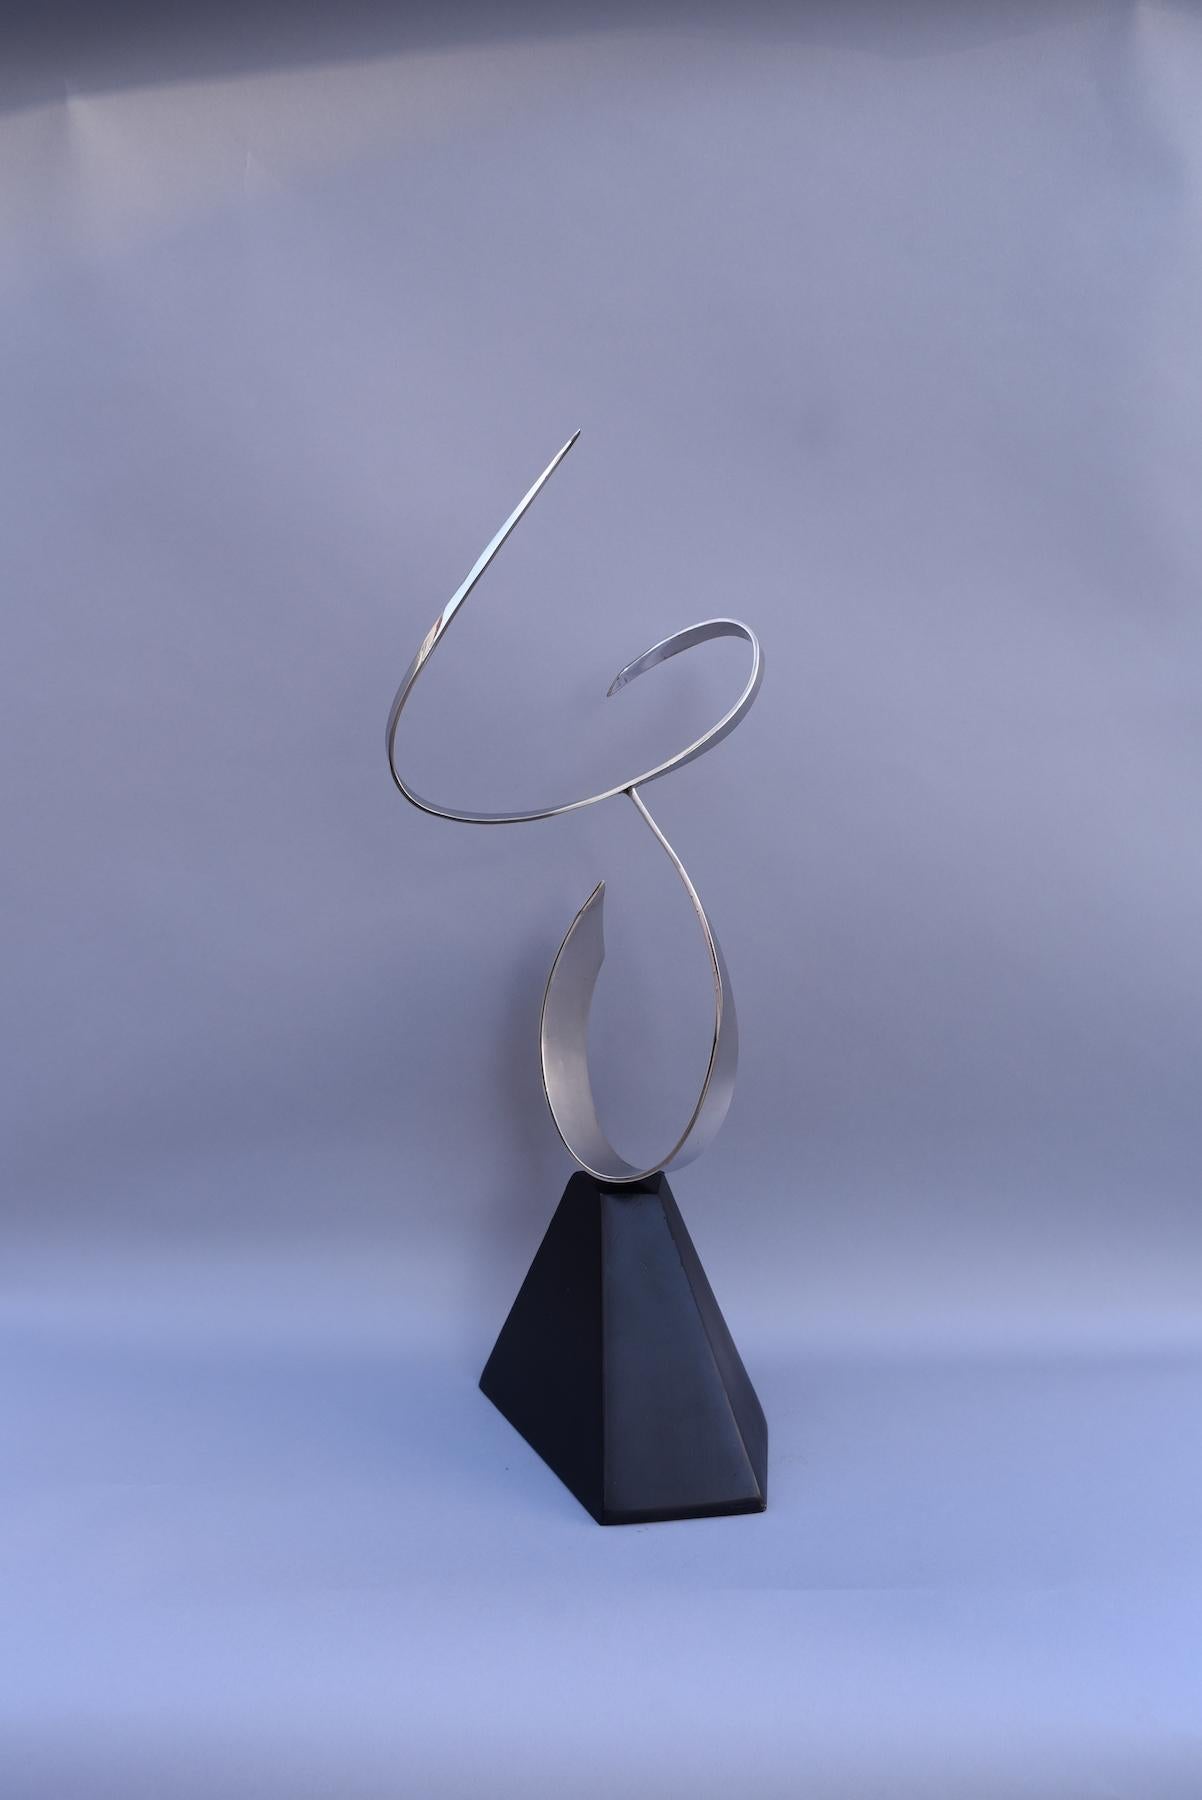 Dans cette sculpture en acier inoxydable de Marko Kratohvil, les courbes gracieuses de deux segments d'acier lisse se rencontrent en mouvement, créant une forme figurative abstraite. Cette sculpture de table est posée en équilibre sur une base en